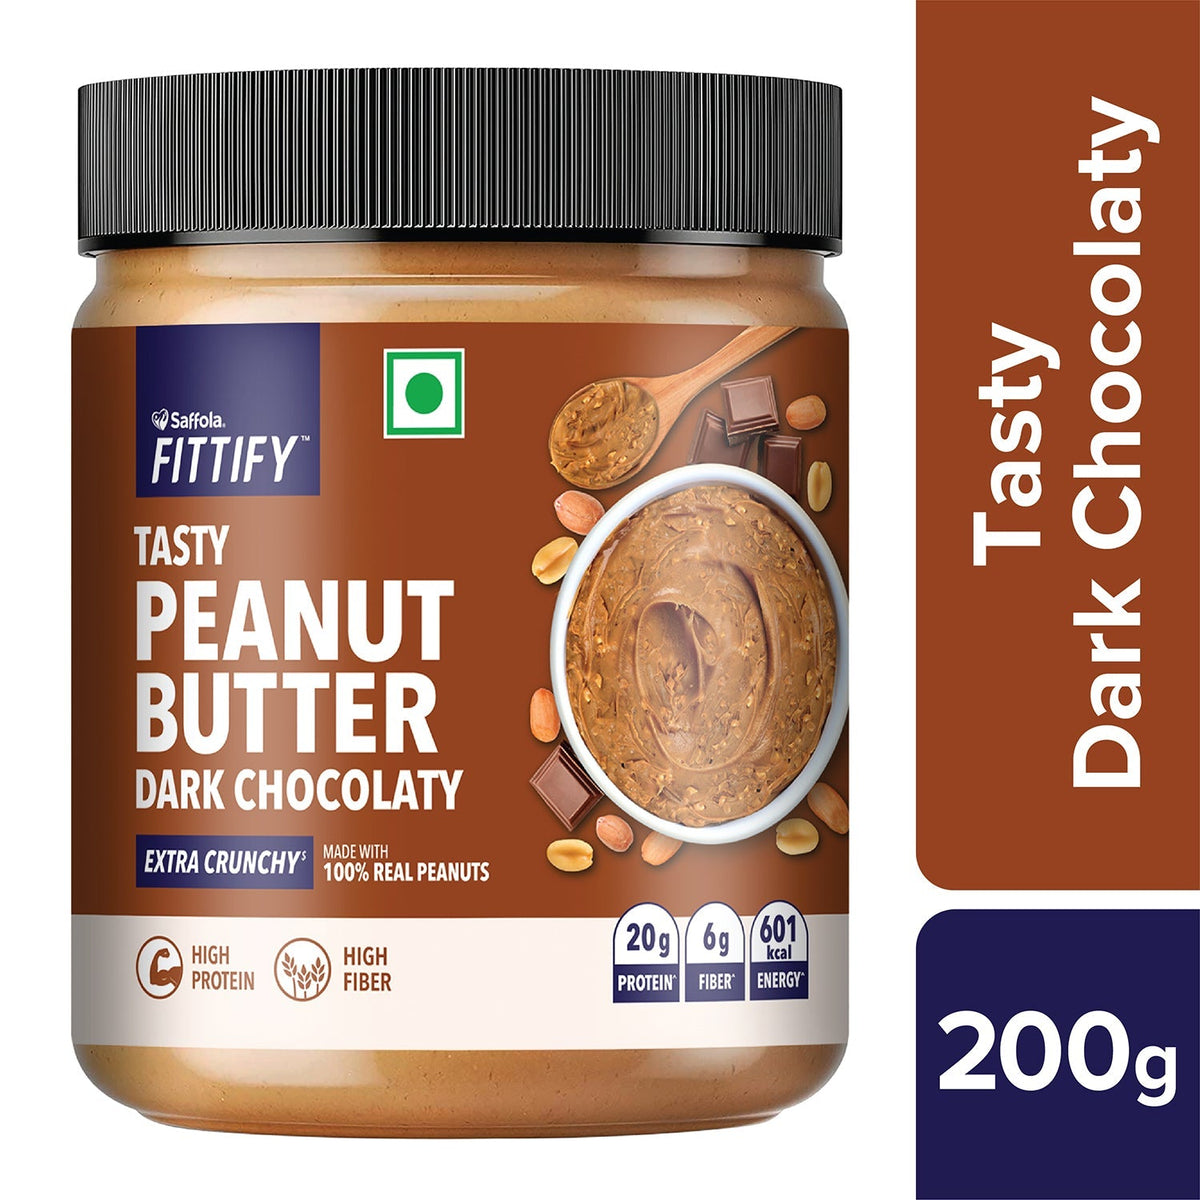 [CRED] Saffola Fittify Tasty - Dark Chocolaty - Peanut Butter